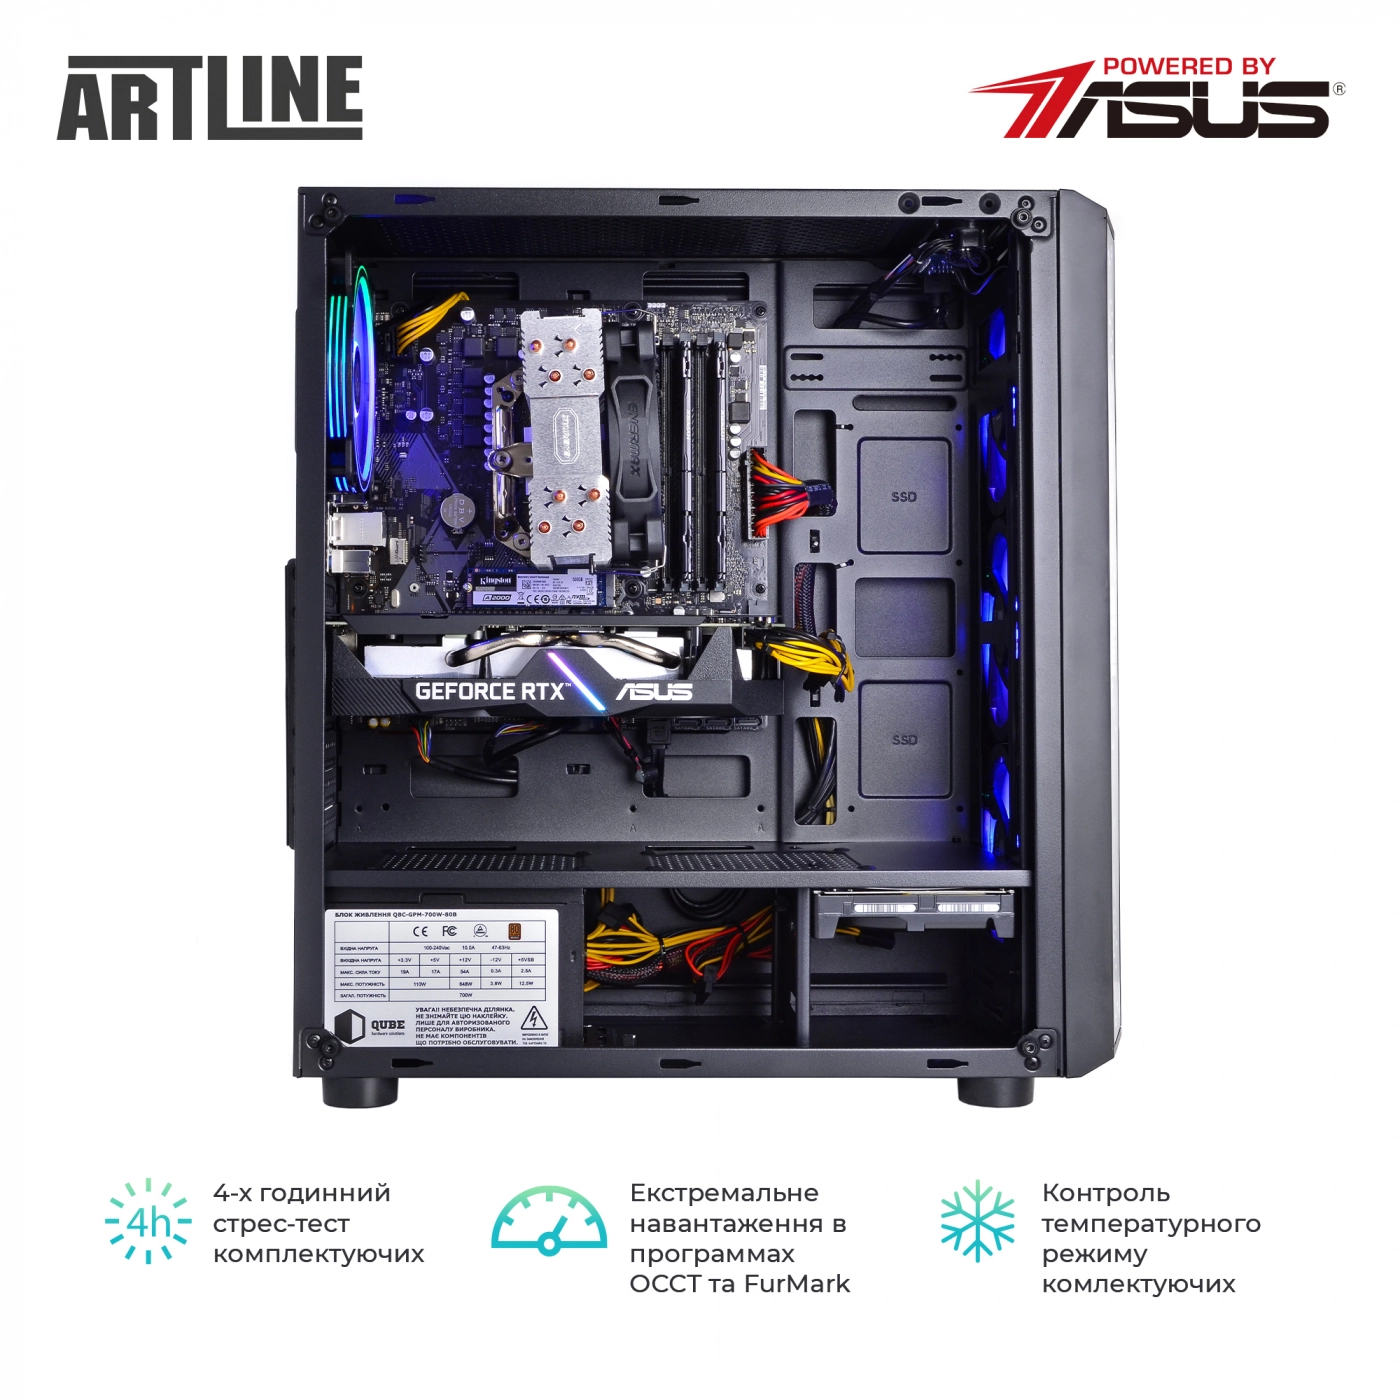 Купить Компьютер ARTLINE Gaming X75v17 - фото 8